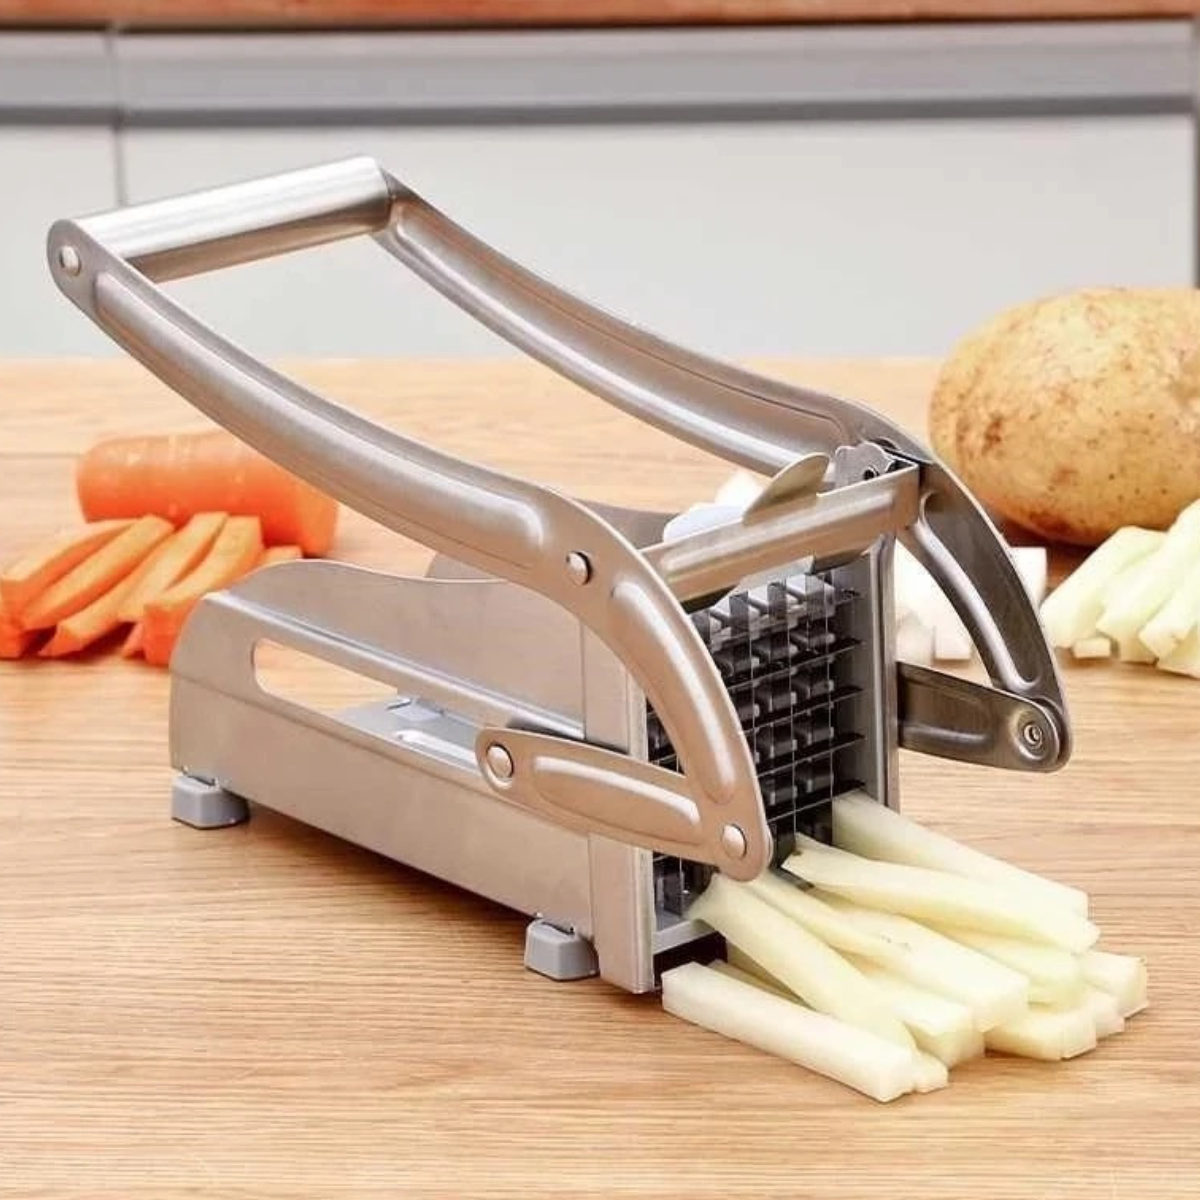 zu UWOT bedienen, einfach leicht Kartoffelschneider Gemüsesorten erhältlich zu reinigen, viele Kartoffelschneider-Edelstahl: